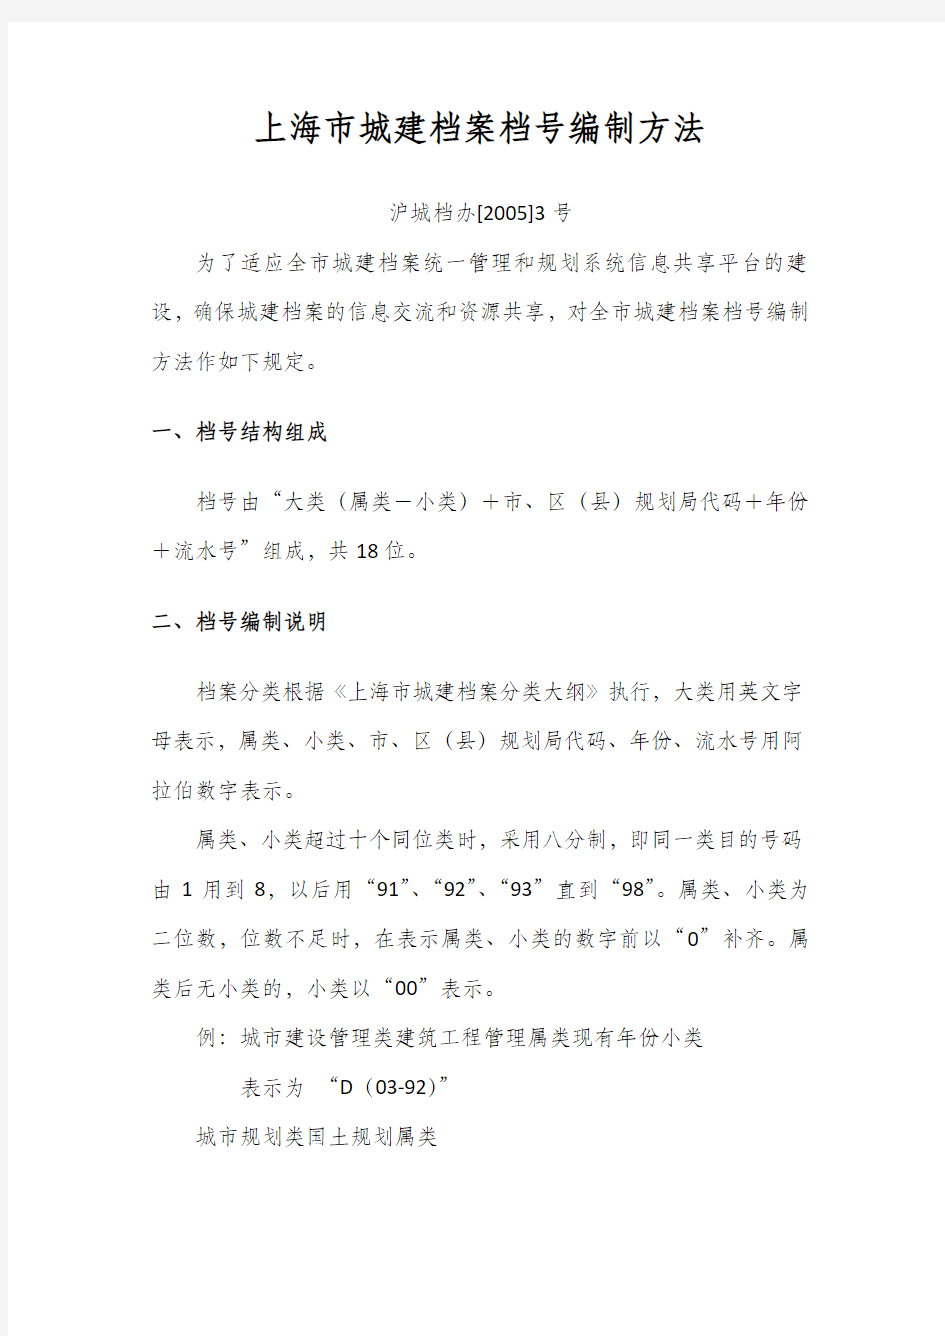 上海市城建档案档号编制方法及分类大纲——沪城档办[2005]3号